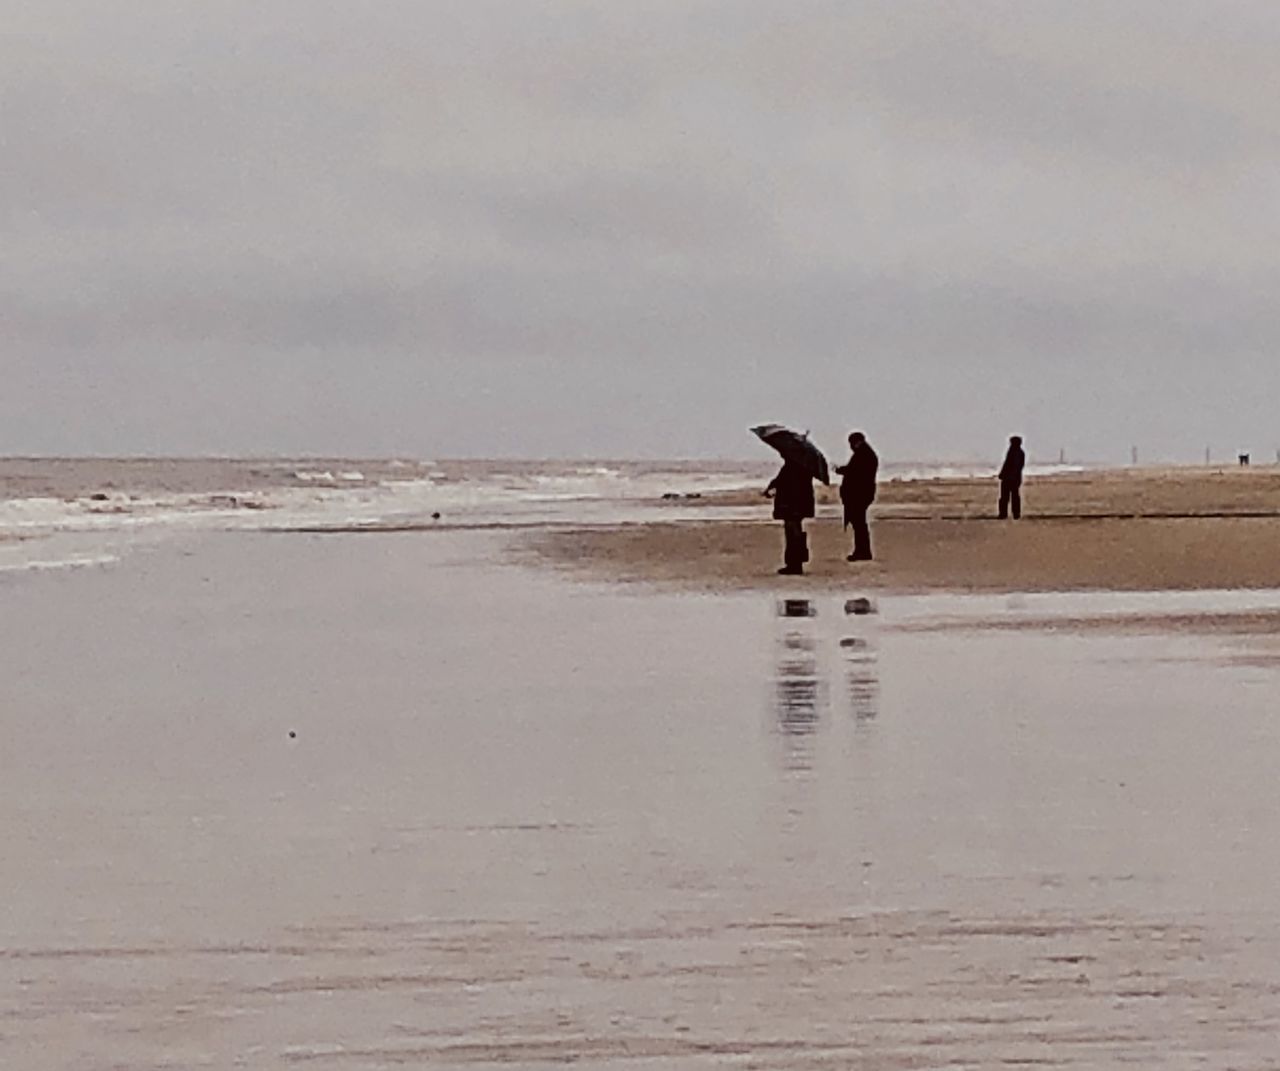 MEN WALKING ON BEACH AGAINST SKY DURING SUNSET